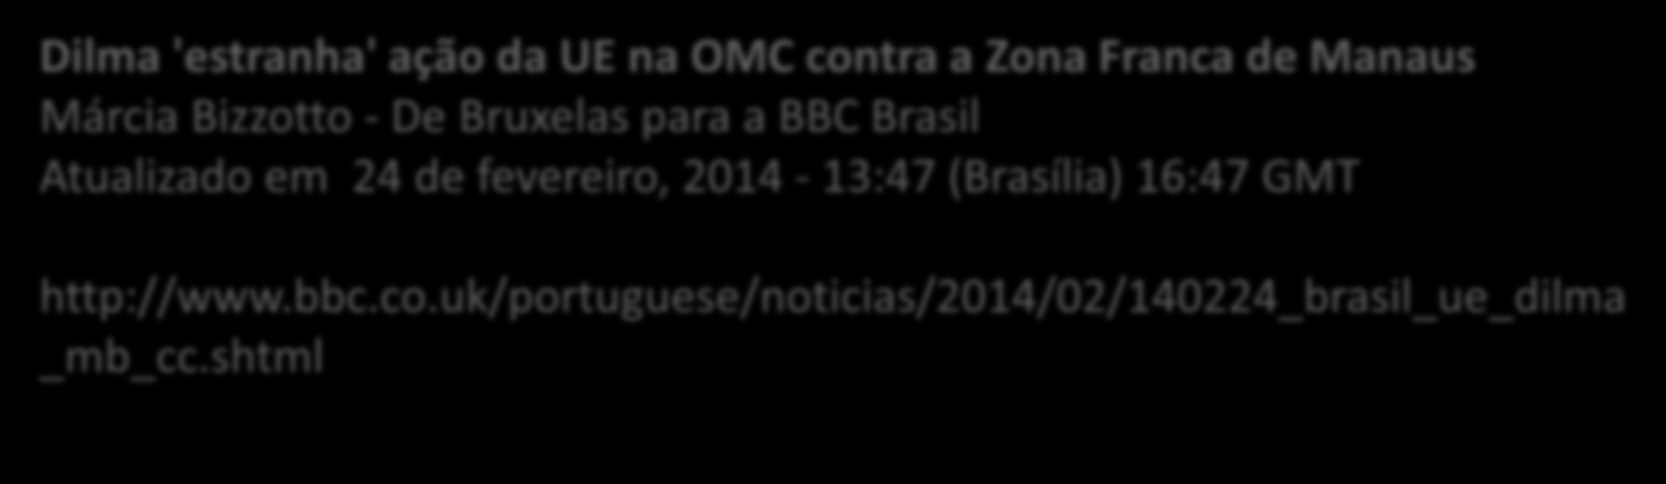 Atualidades Mercosul 'emperra' relação do Brasil com União Europeia Márcia Bizzotto - De Bruxelas para a BBC Brasil Atualizado em 23 de fevereiro, 2014-17:09 (Brasília) 20:09 GMT http://www.bbc.co.uk/portuguese/noticias/2014/02/140219_brasil_uniao_eur opeia_mercosul_mb_mm.